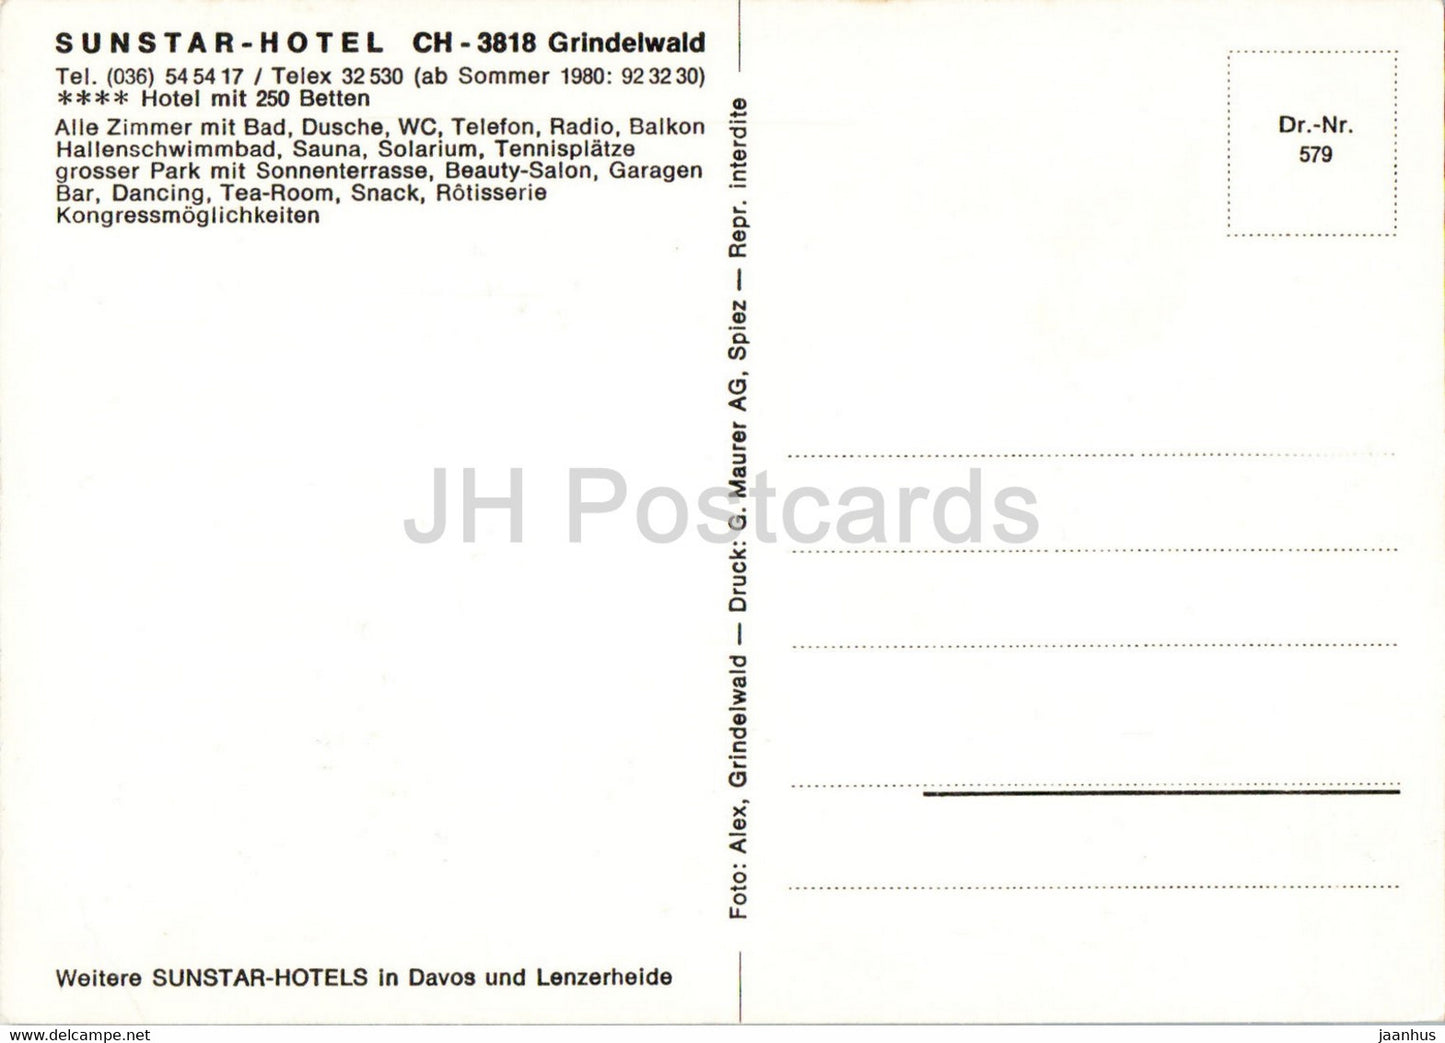 Sunstar Hotel Grindelwald - Schweiz - unbenutzt